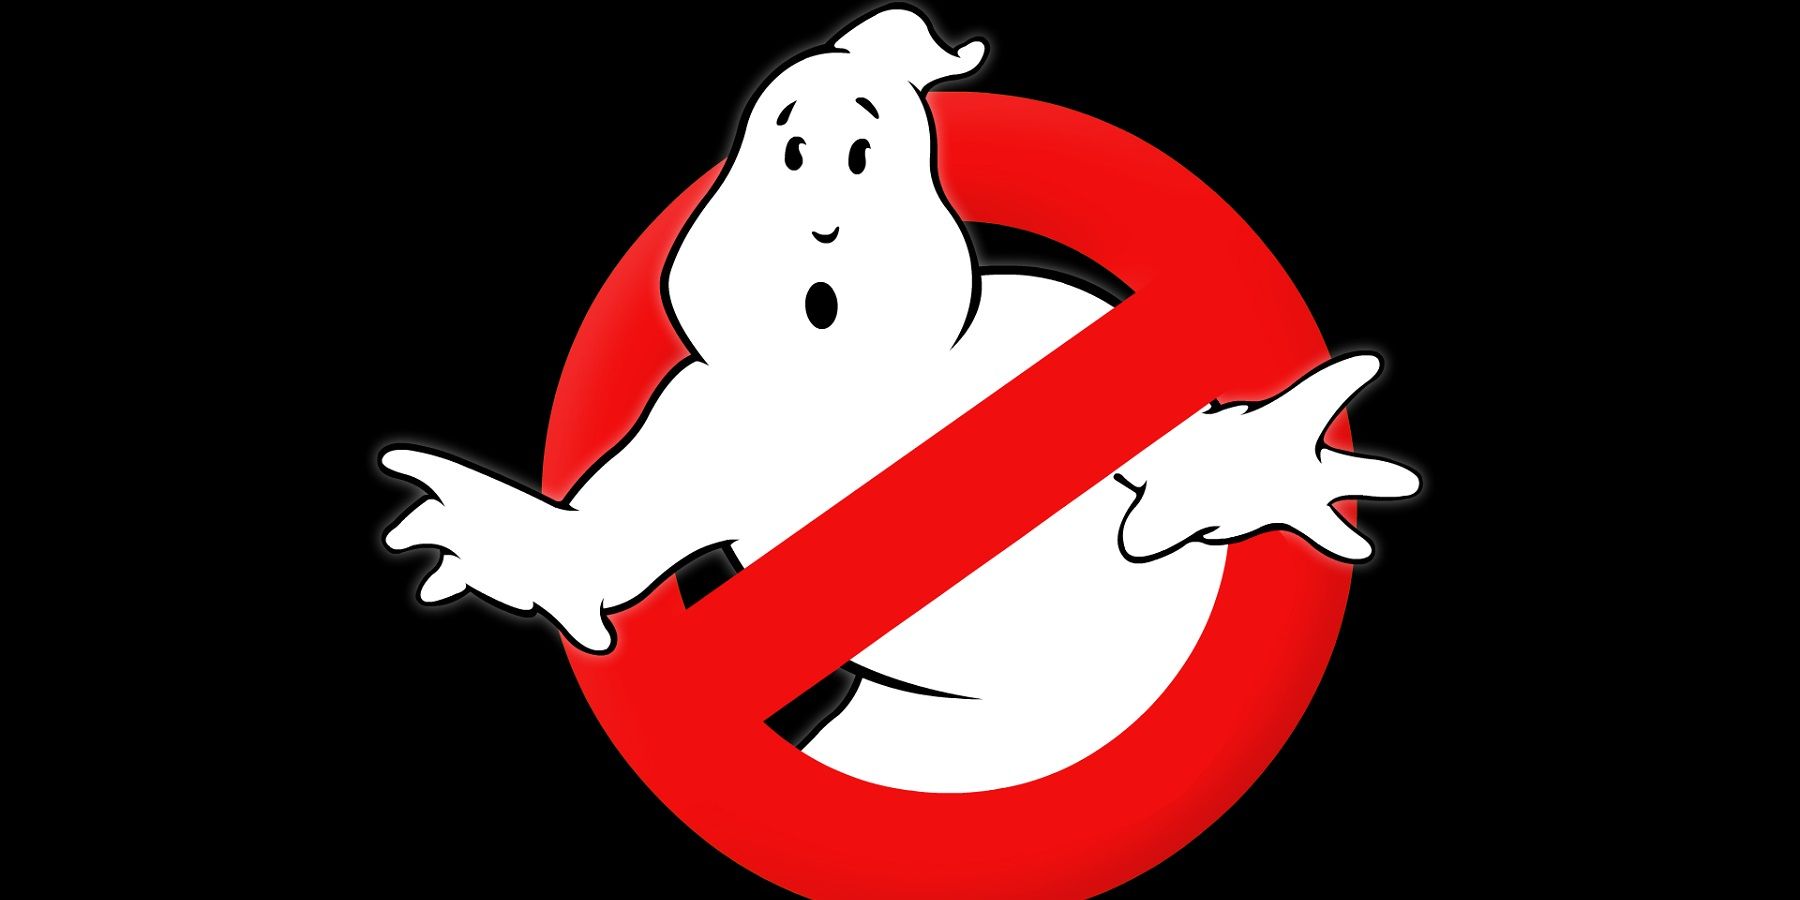 Nová hra Ghostbusters je údajně ve vývoji do pátku 13. Dev